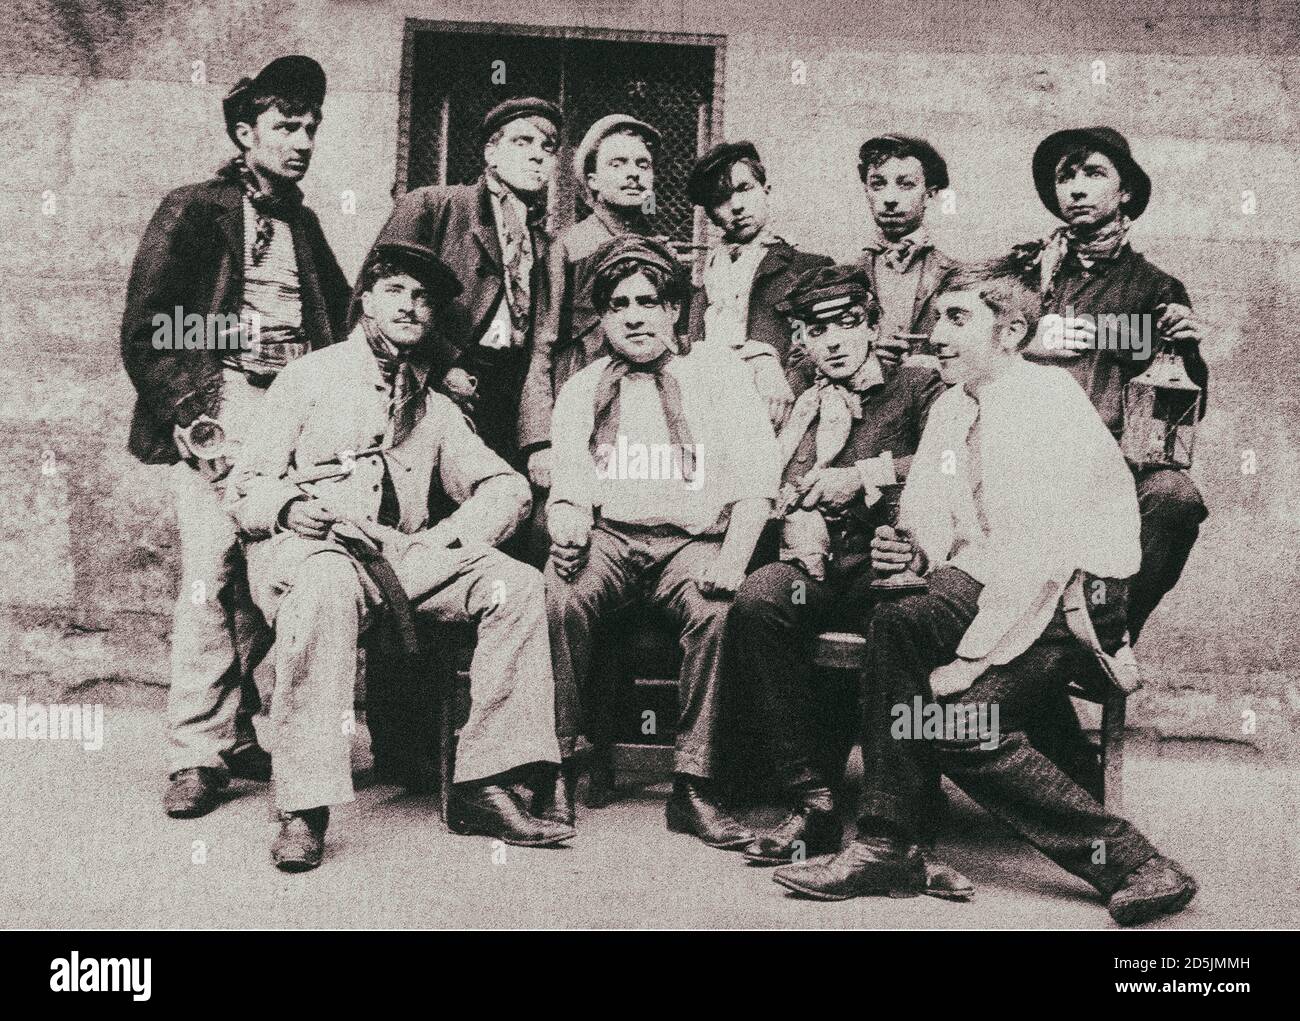 Retro-Foto von La Belle Epoque. Eine Bande von Apaches. Les Apaches war eine parisische Belle Epoque gewalttätigen kriminellen Unterwelt Subkultur des frühen 20. Jahrhunderts Stockfoto